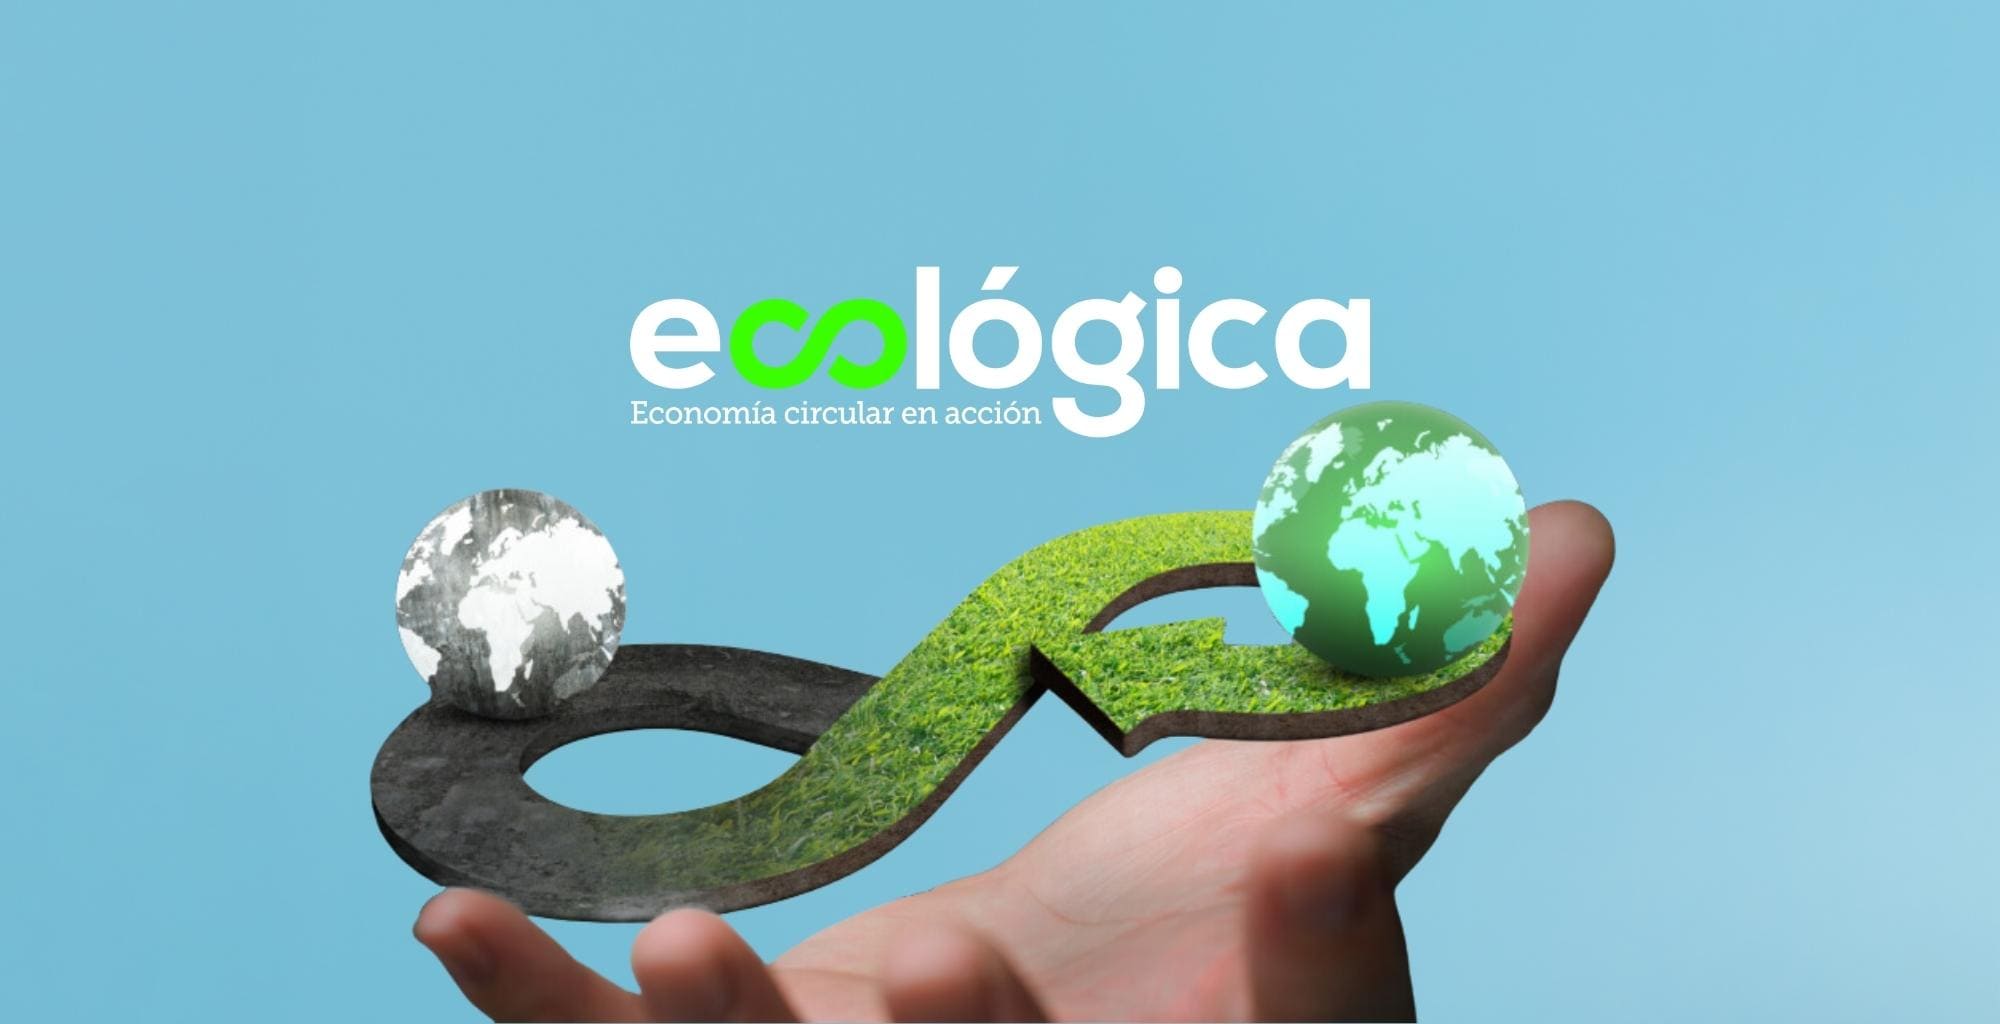 La mano de una persona elevando la imagen de 2 planetas tierra, una sin y otra con color, sobre un signo de infinito verde. Sobre todo el logo de Ecológica.